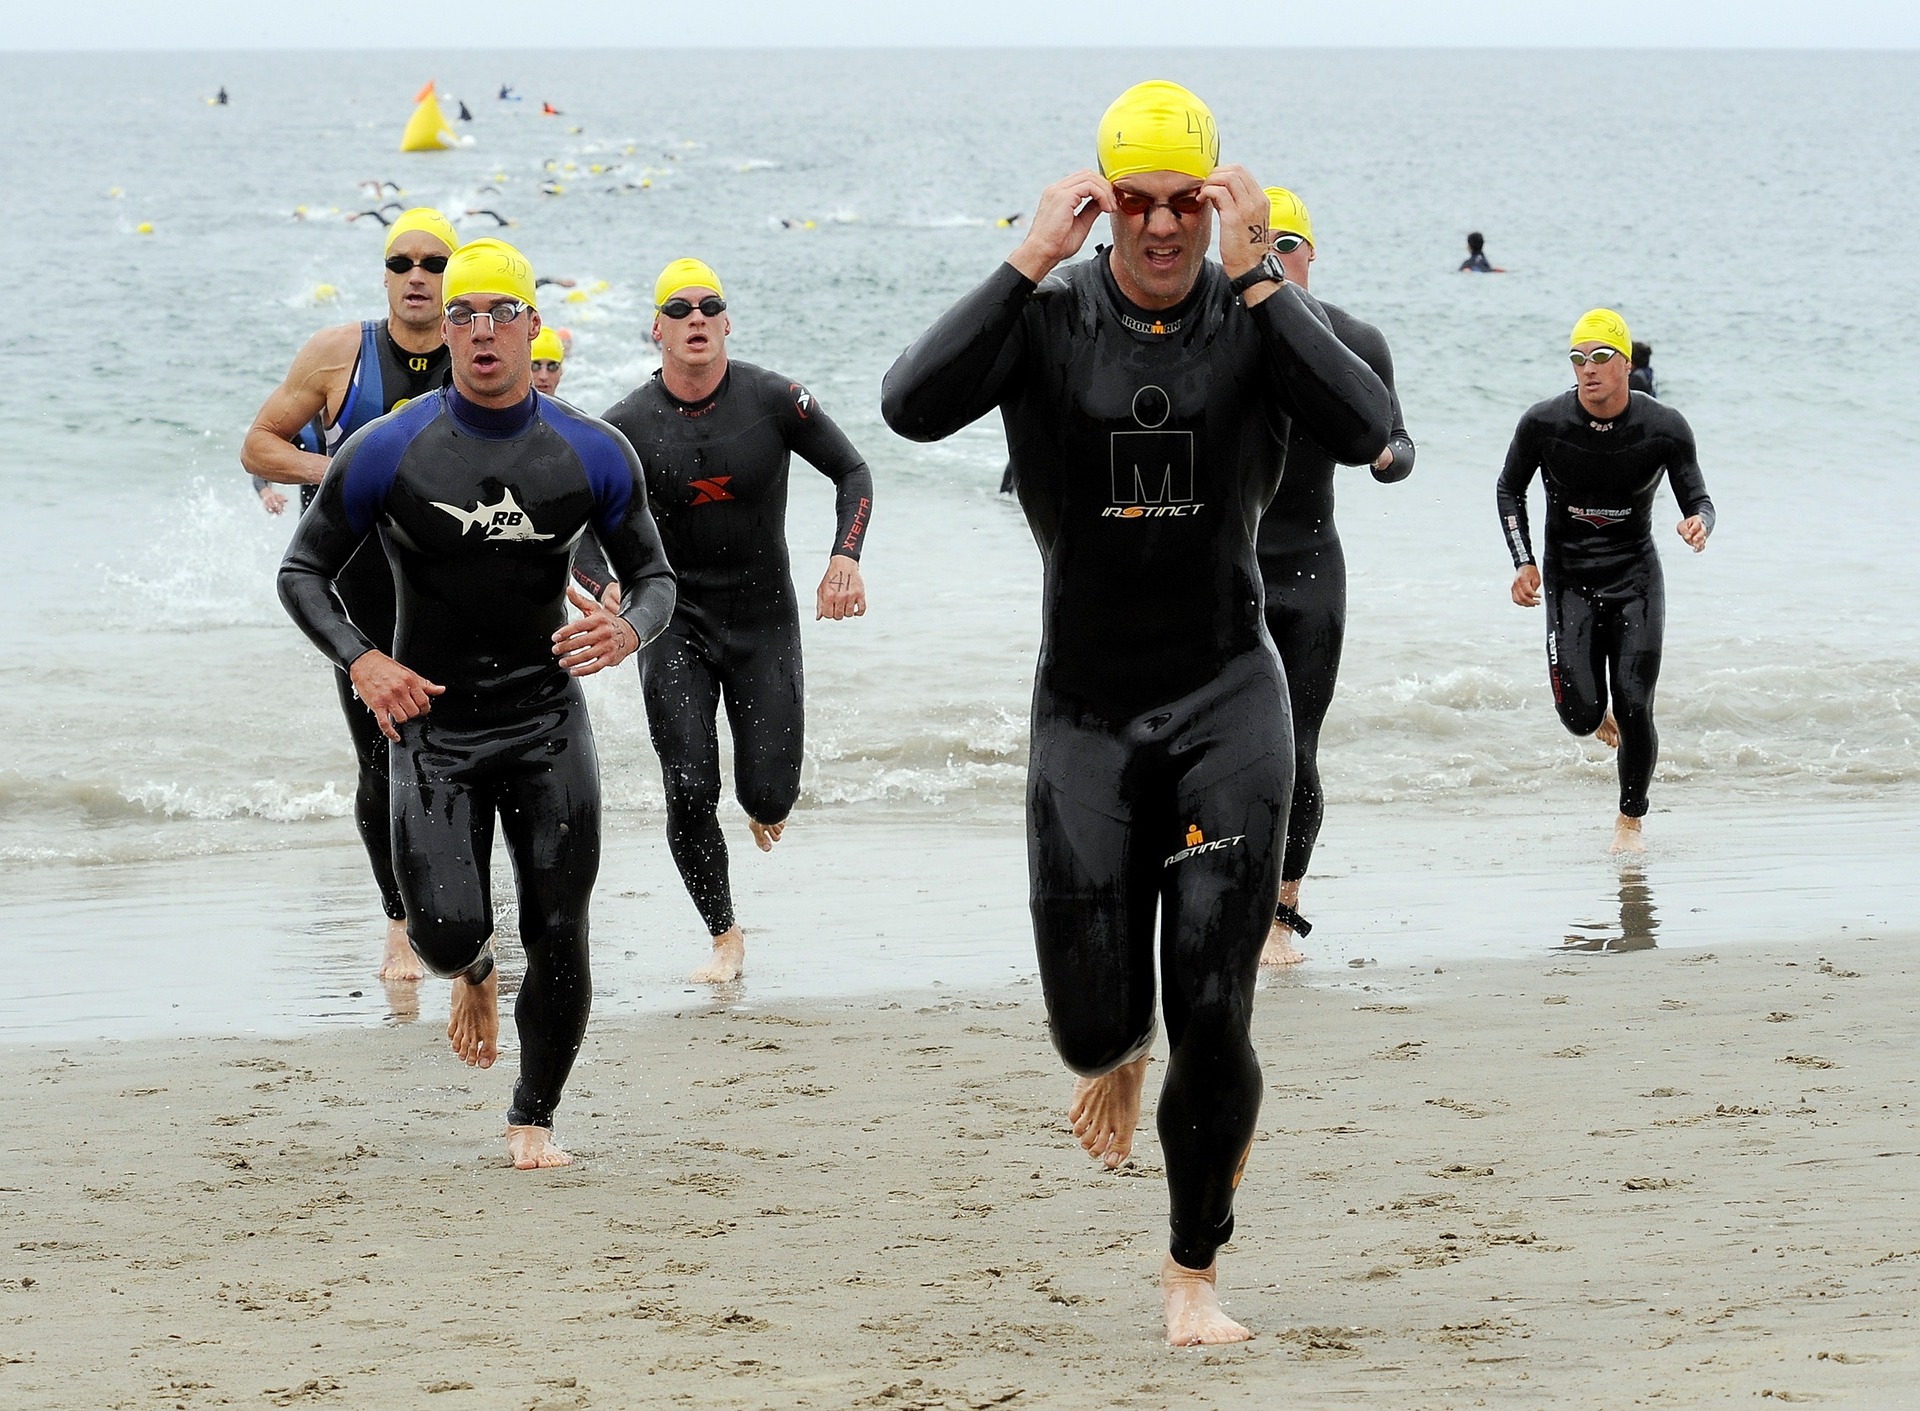 Bơi lội là một nội dung trong cuộc thi Ba môn phối hợp Ironman. (Ảnh: Pixabay)